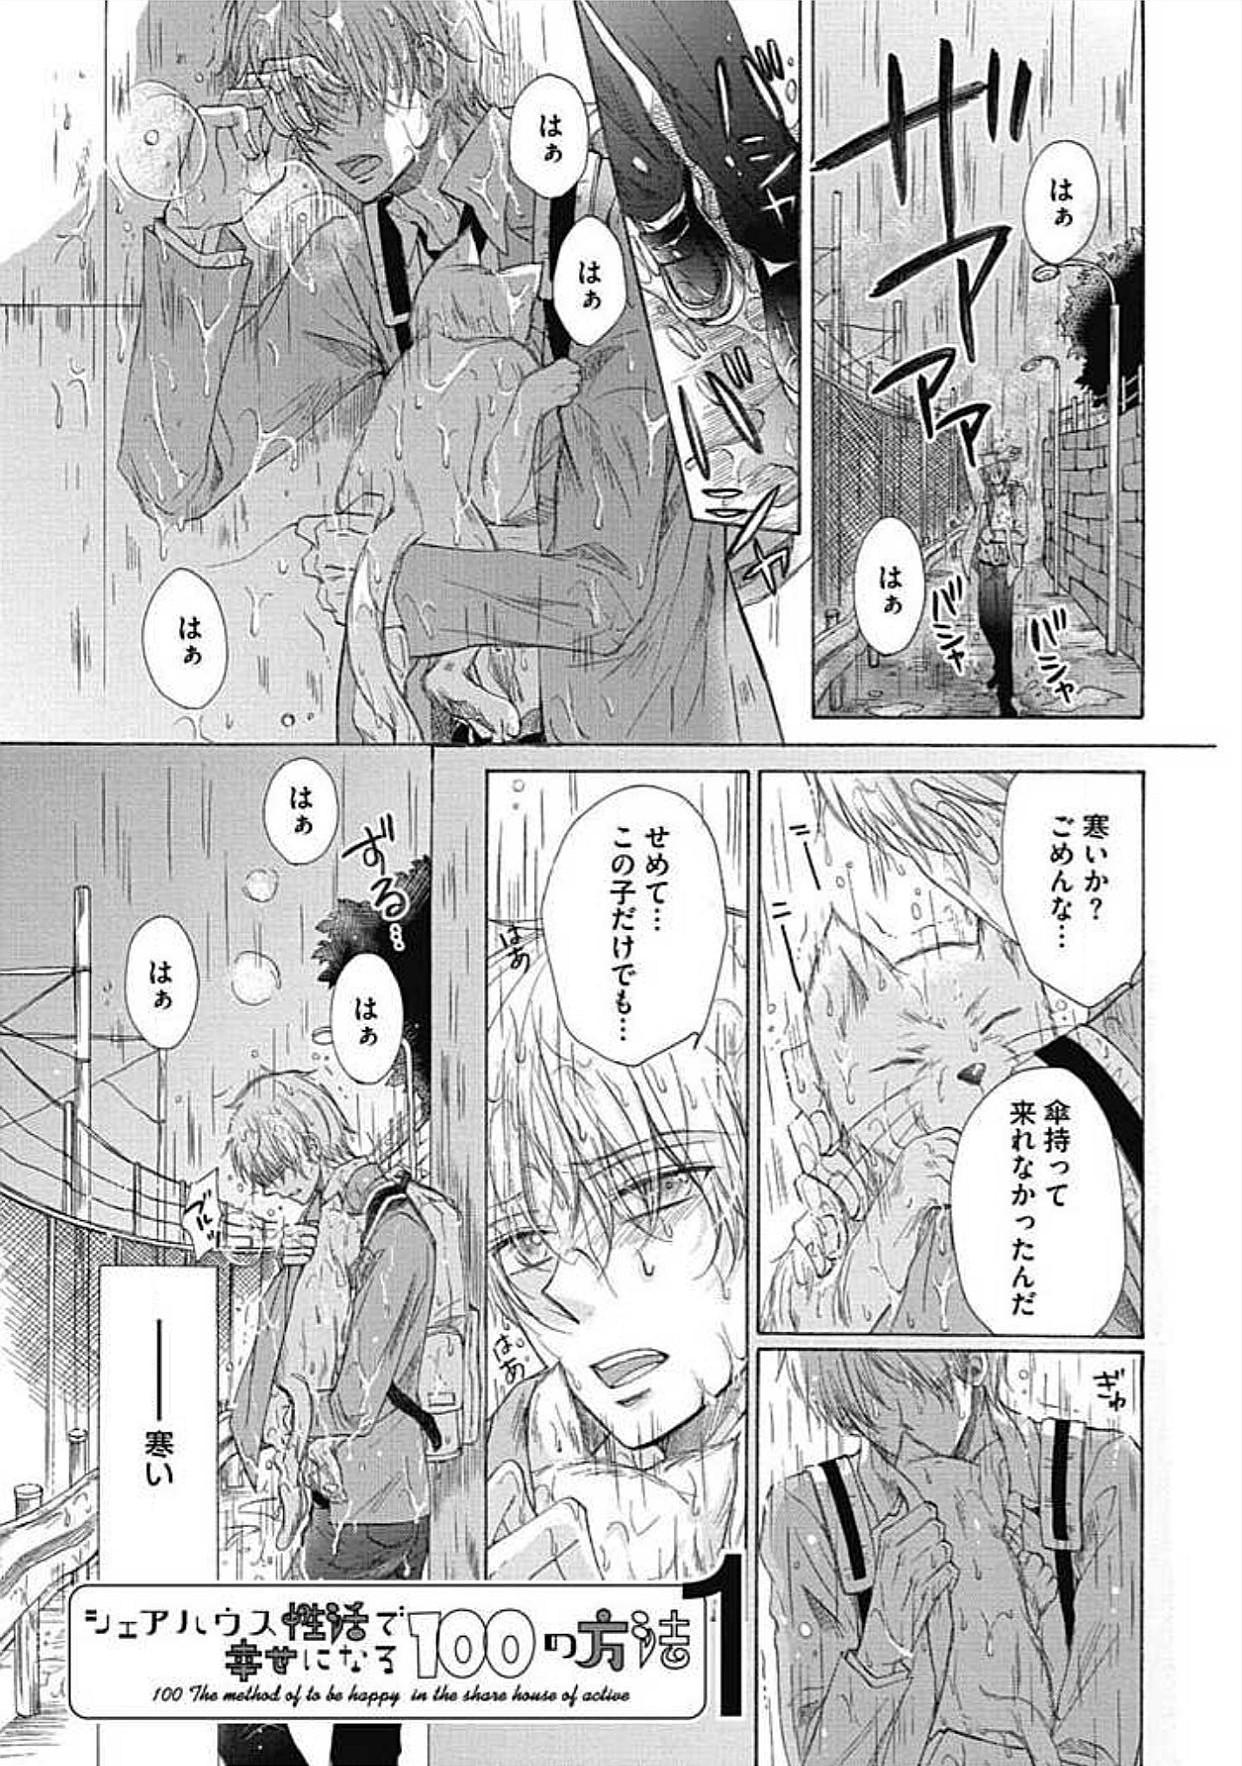 Exposed Share House Seikatsu de Shiawase ni Naru 100 no Houhou Picked Up - Page 5